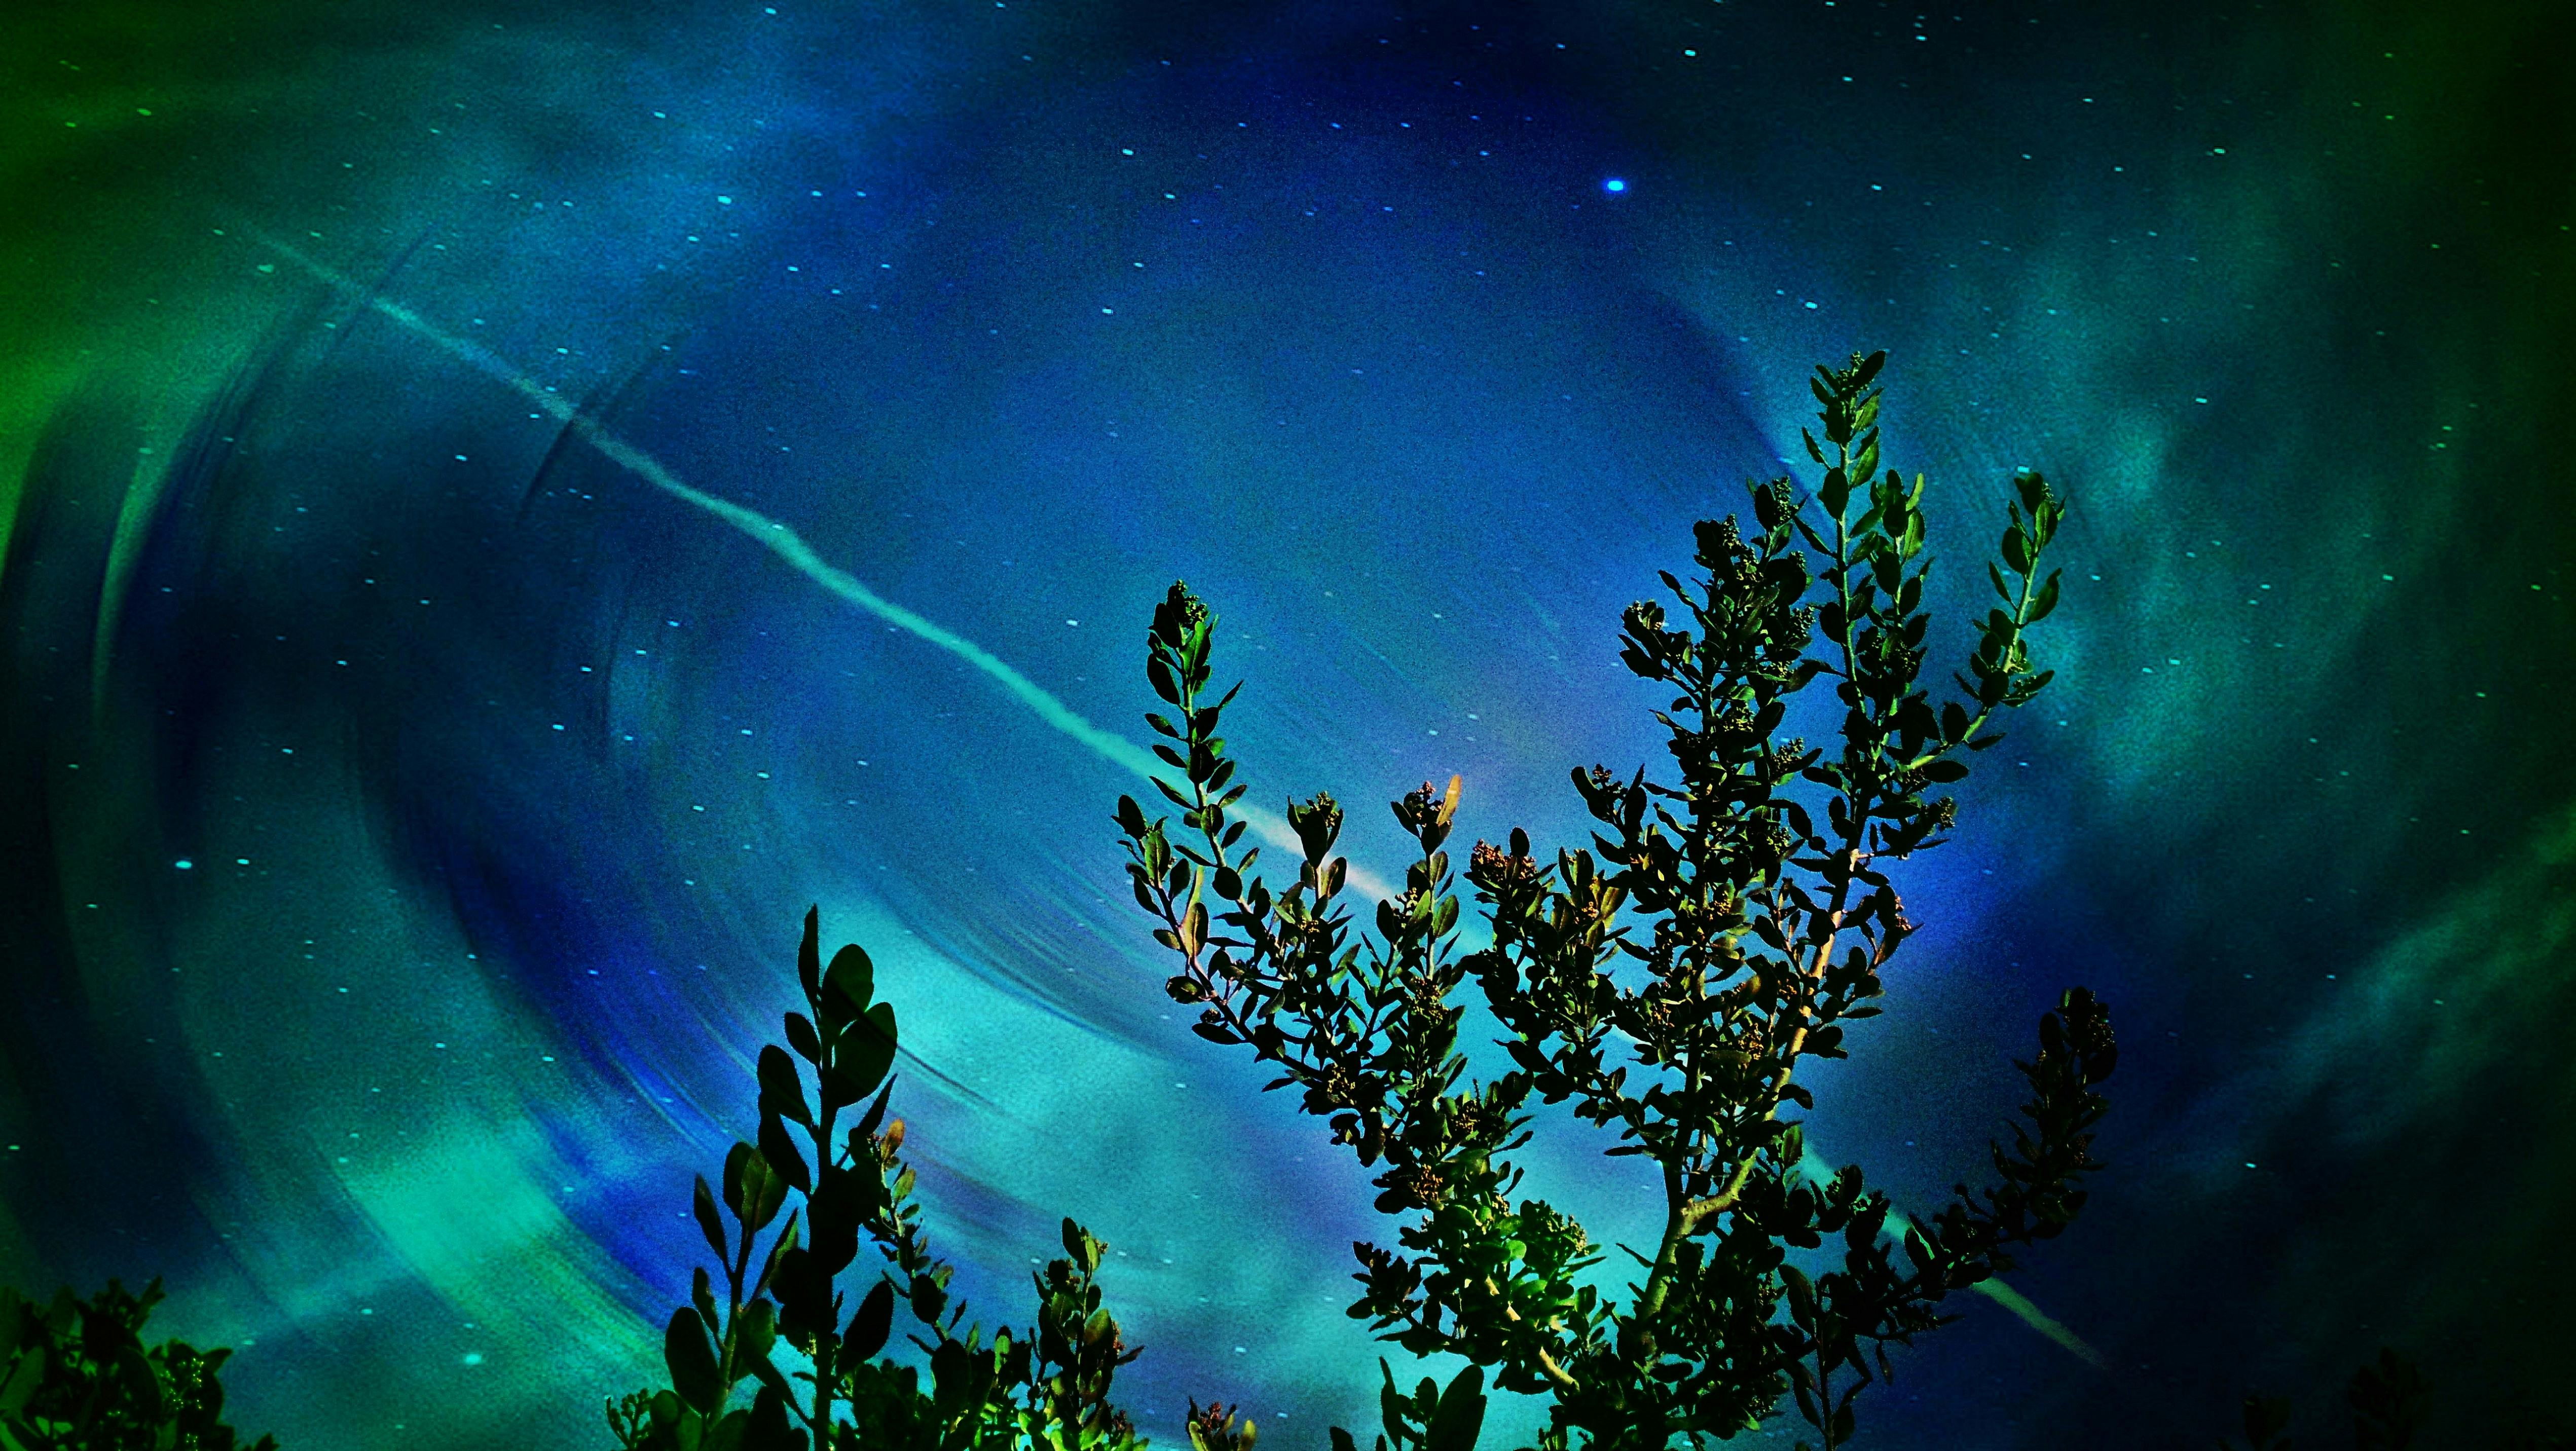 Free Stock Photo Of Night, Sky, Space